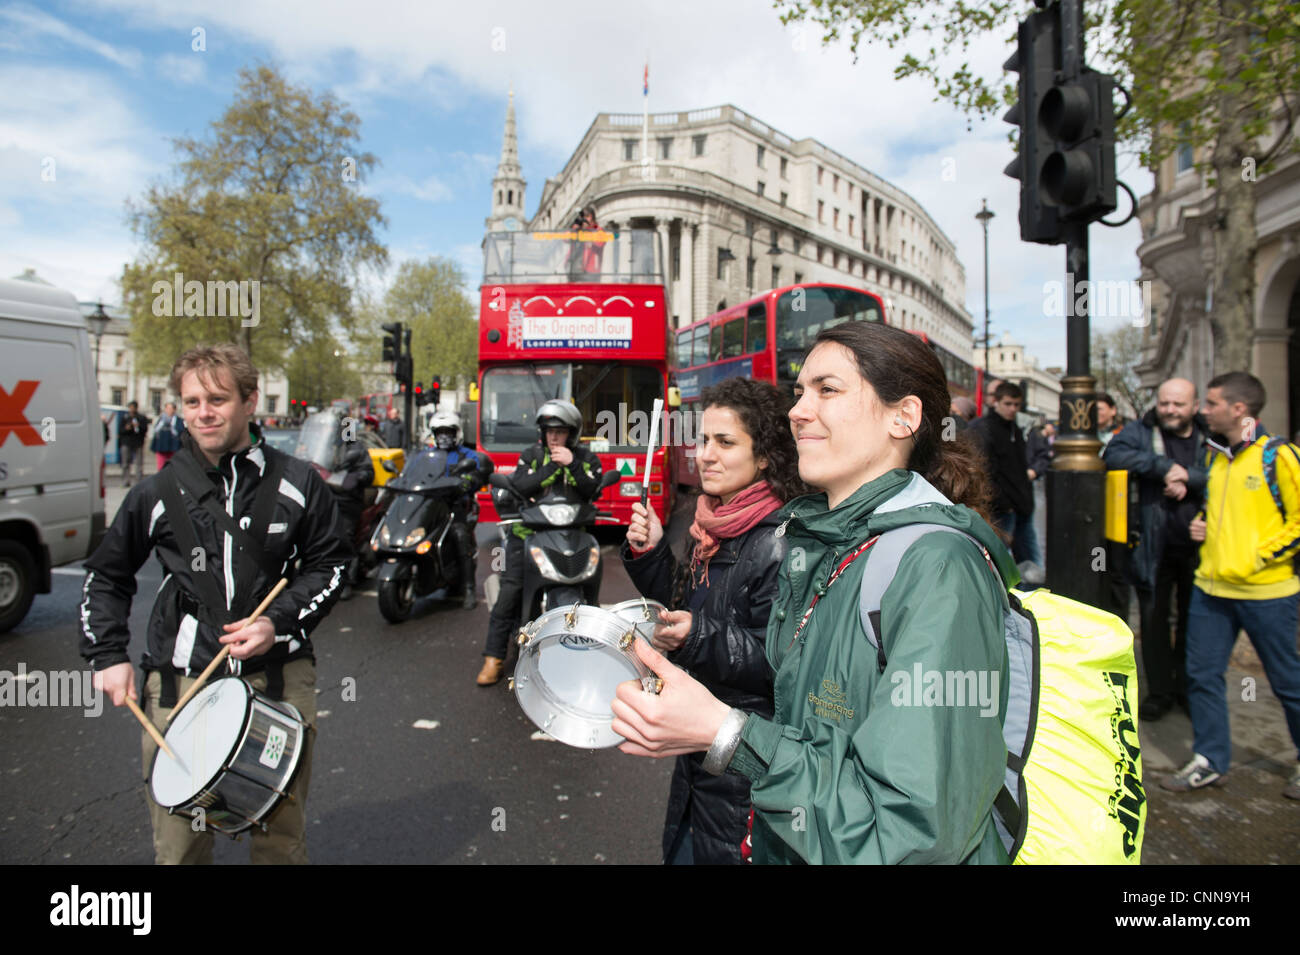 Mobilité manifestants bloquer la route par Trafalgar Square, le centre de Londres pour protester contre les coupures du gouvernement qui les affectent. Banque D'Images